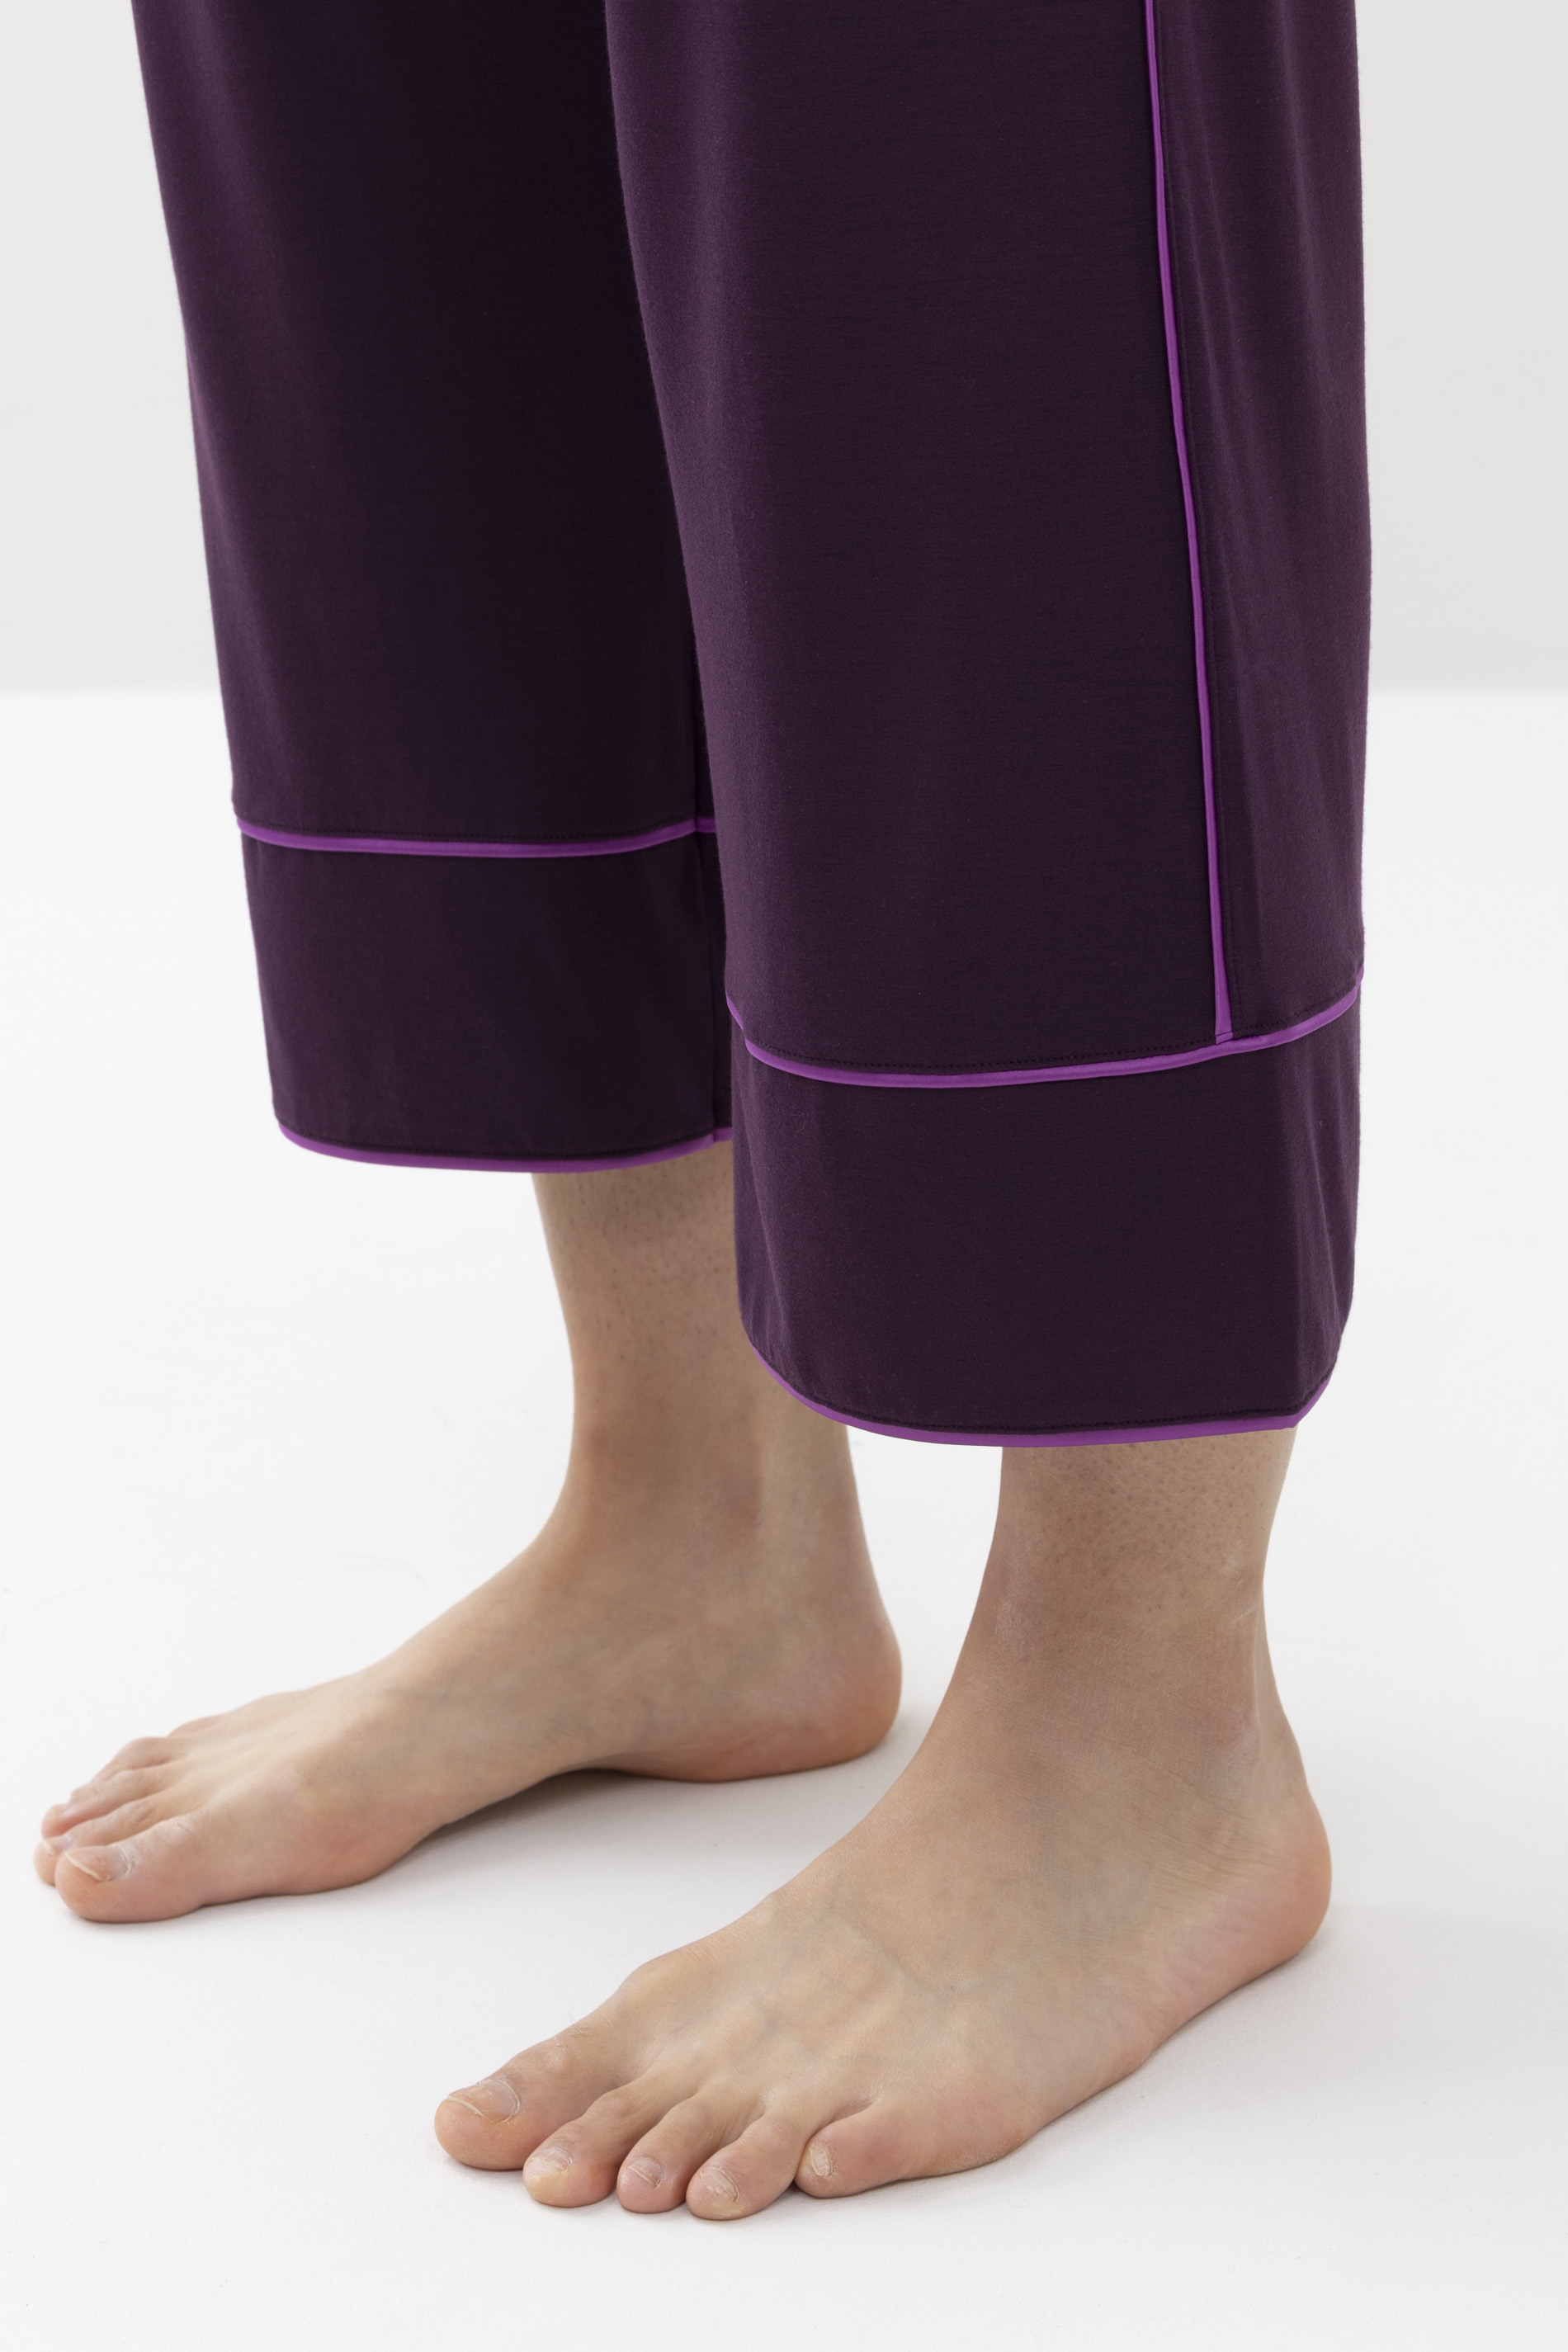 Hose knöchellang Dark Plum Serie Jeane Detailansicht 01 | mey®